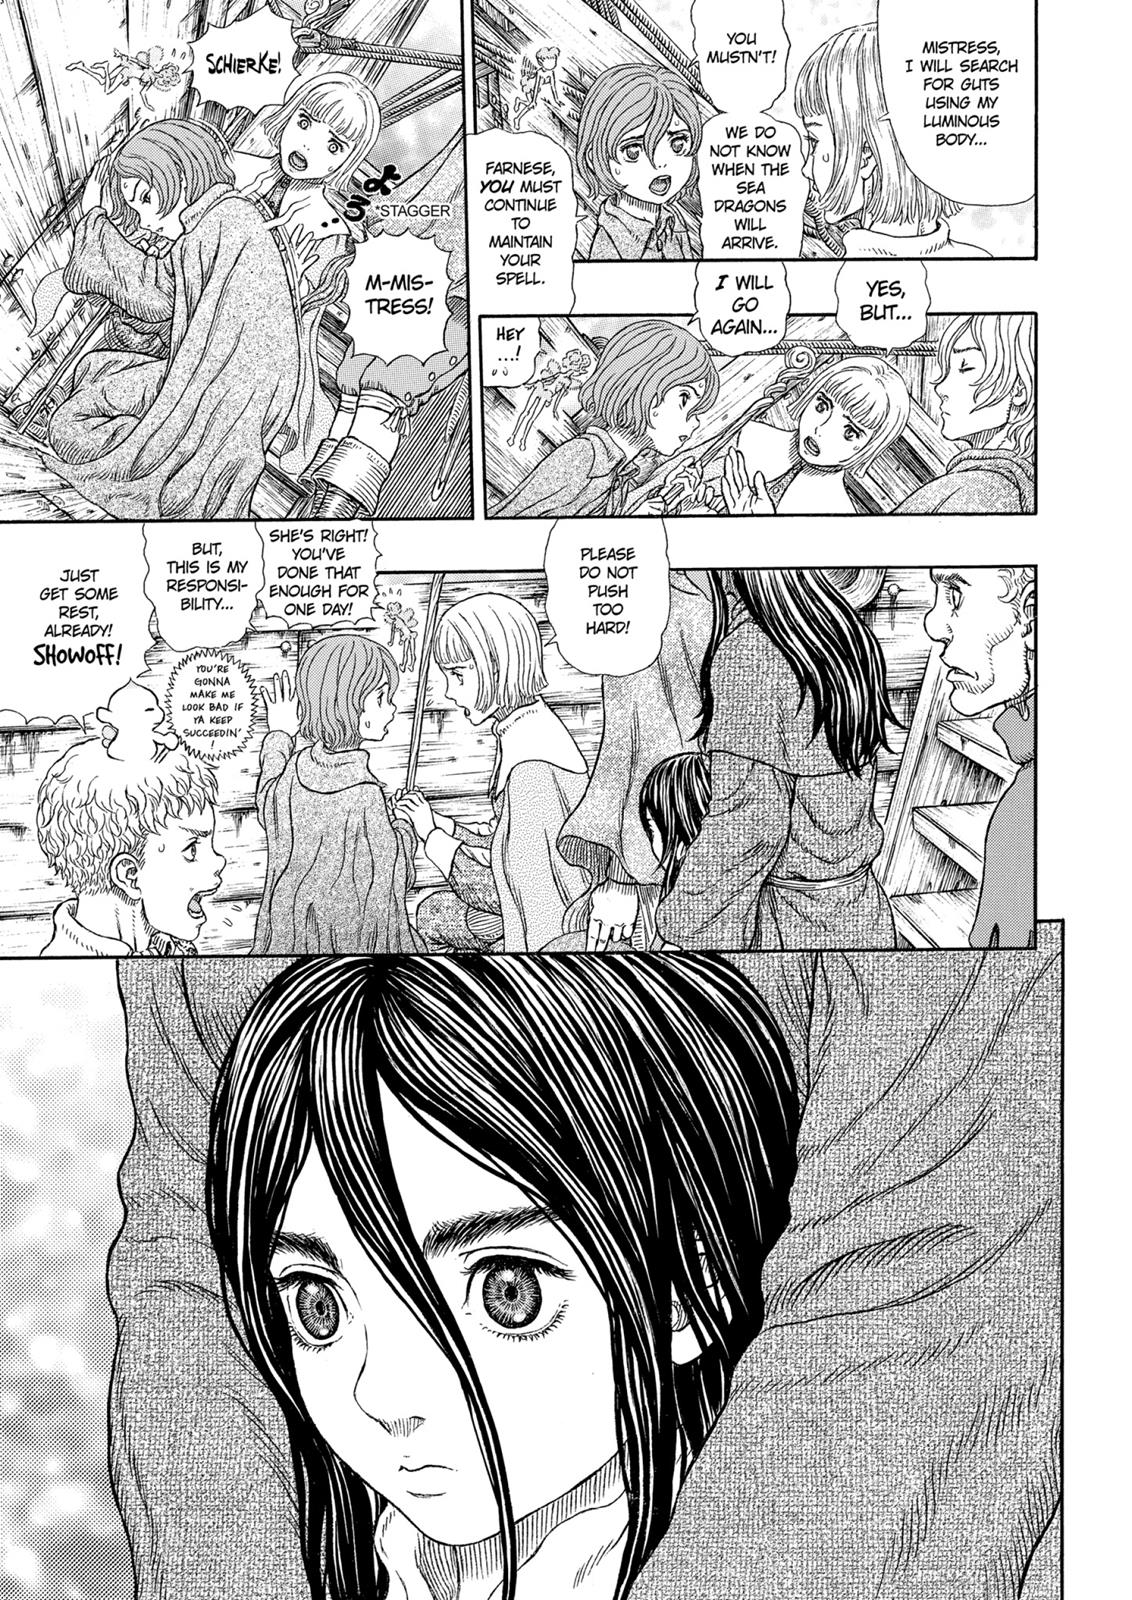 Berserk Manga Chapter 327 image 08